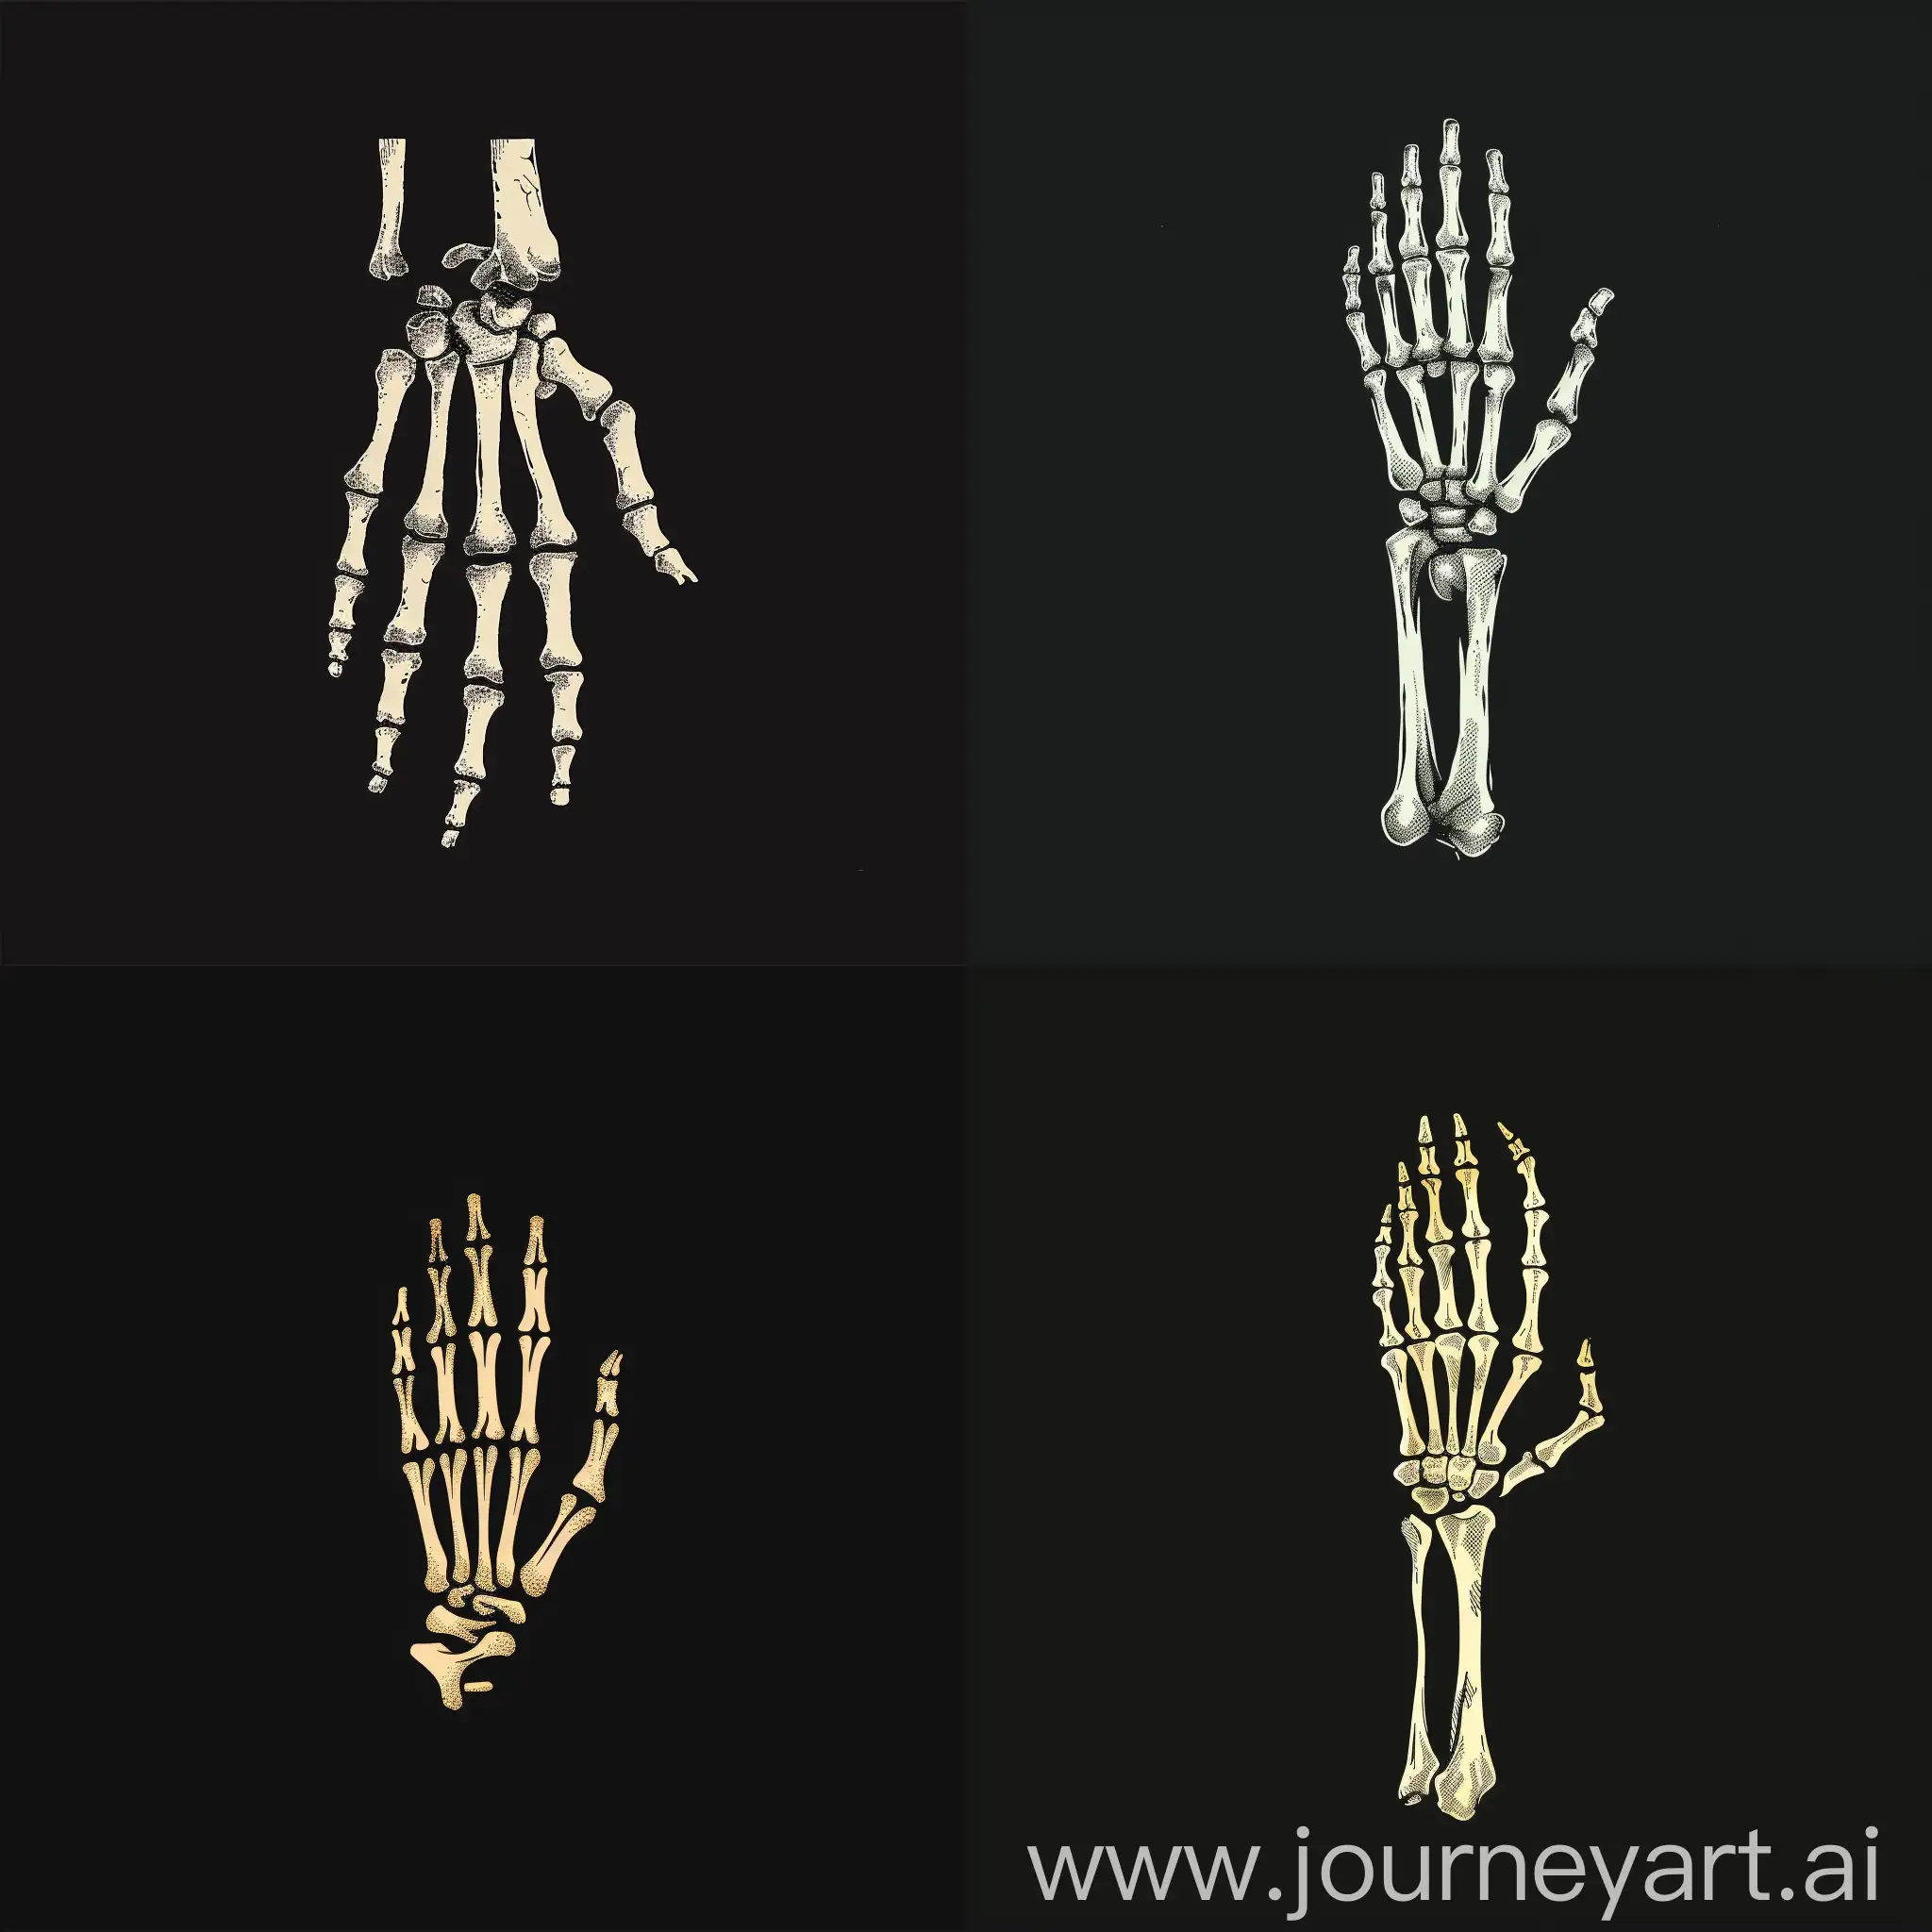 skeleton hand, logo, minimalistic, black background